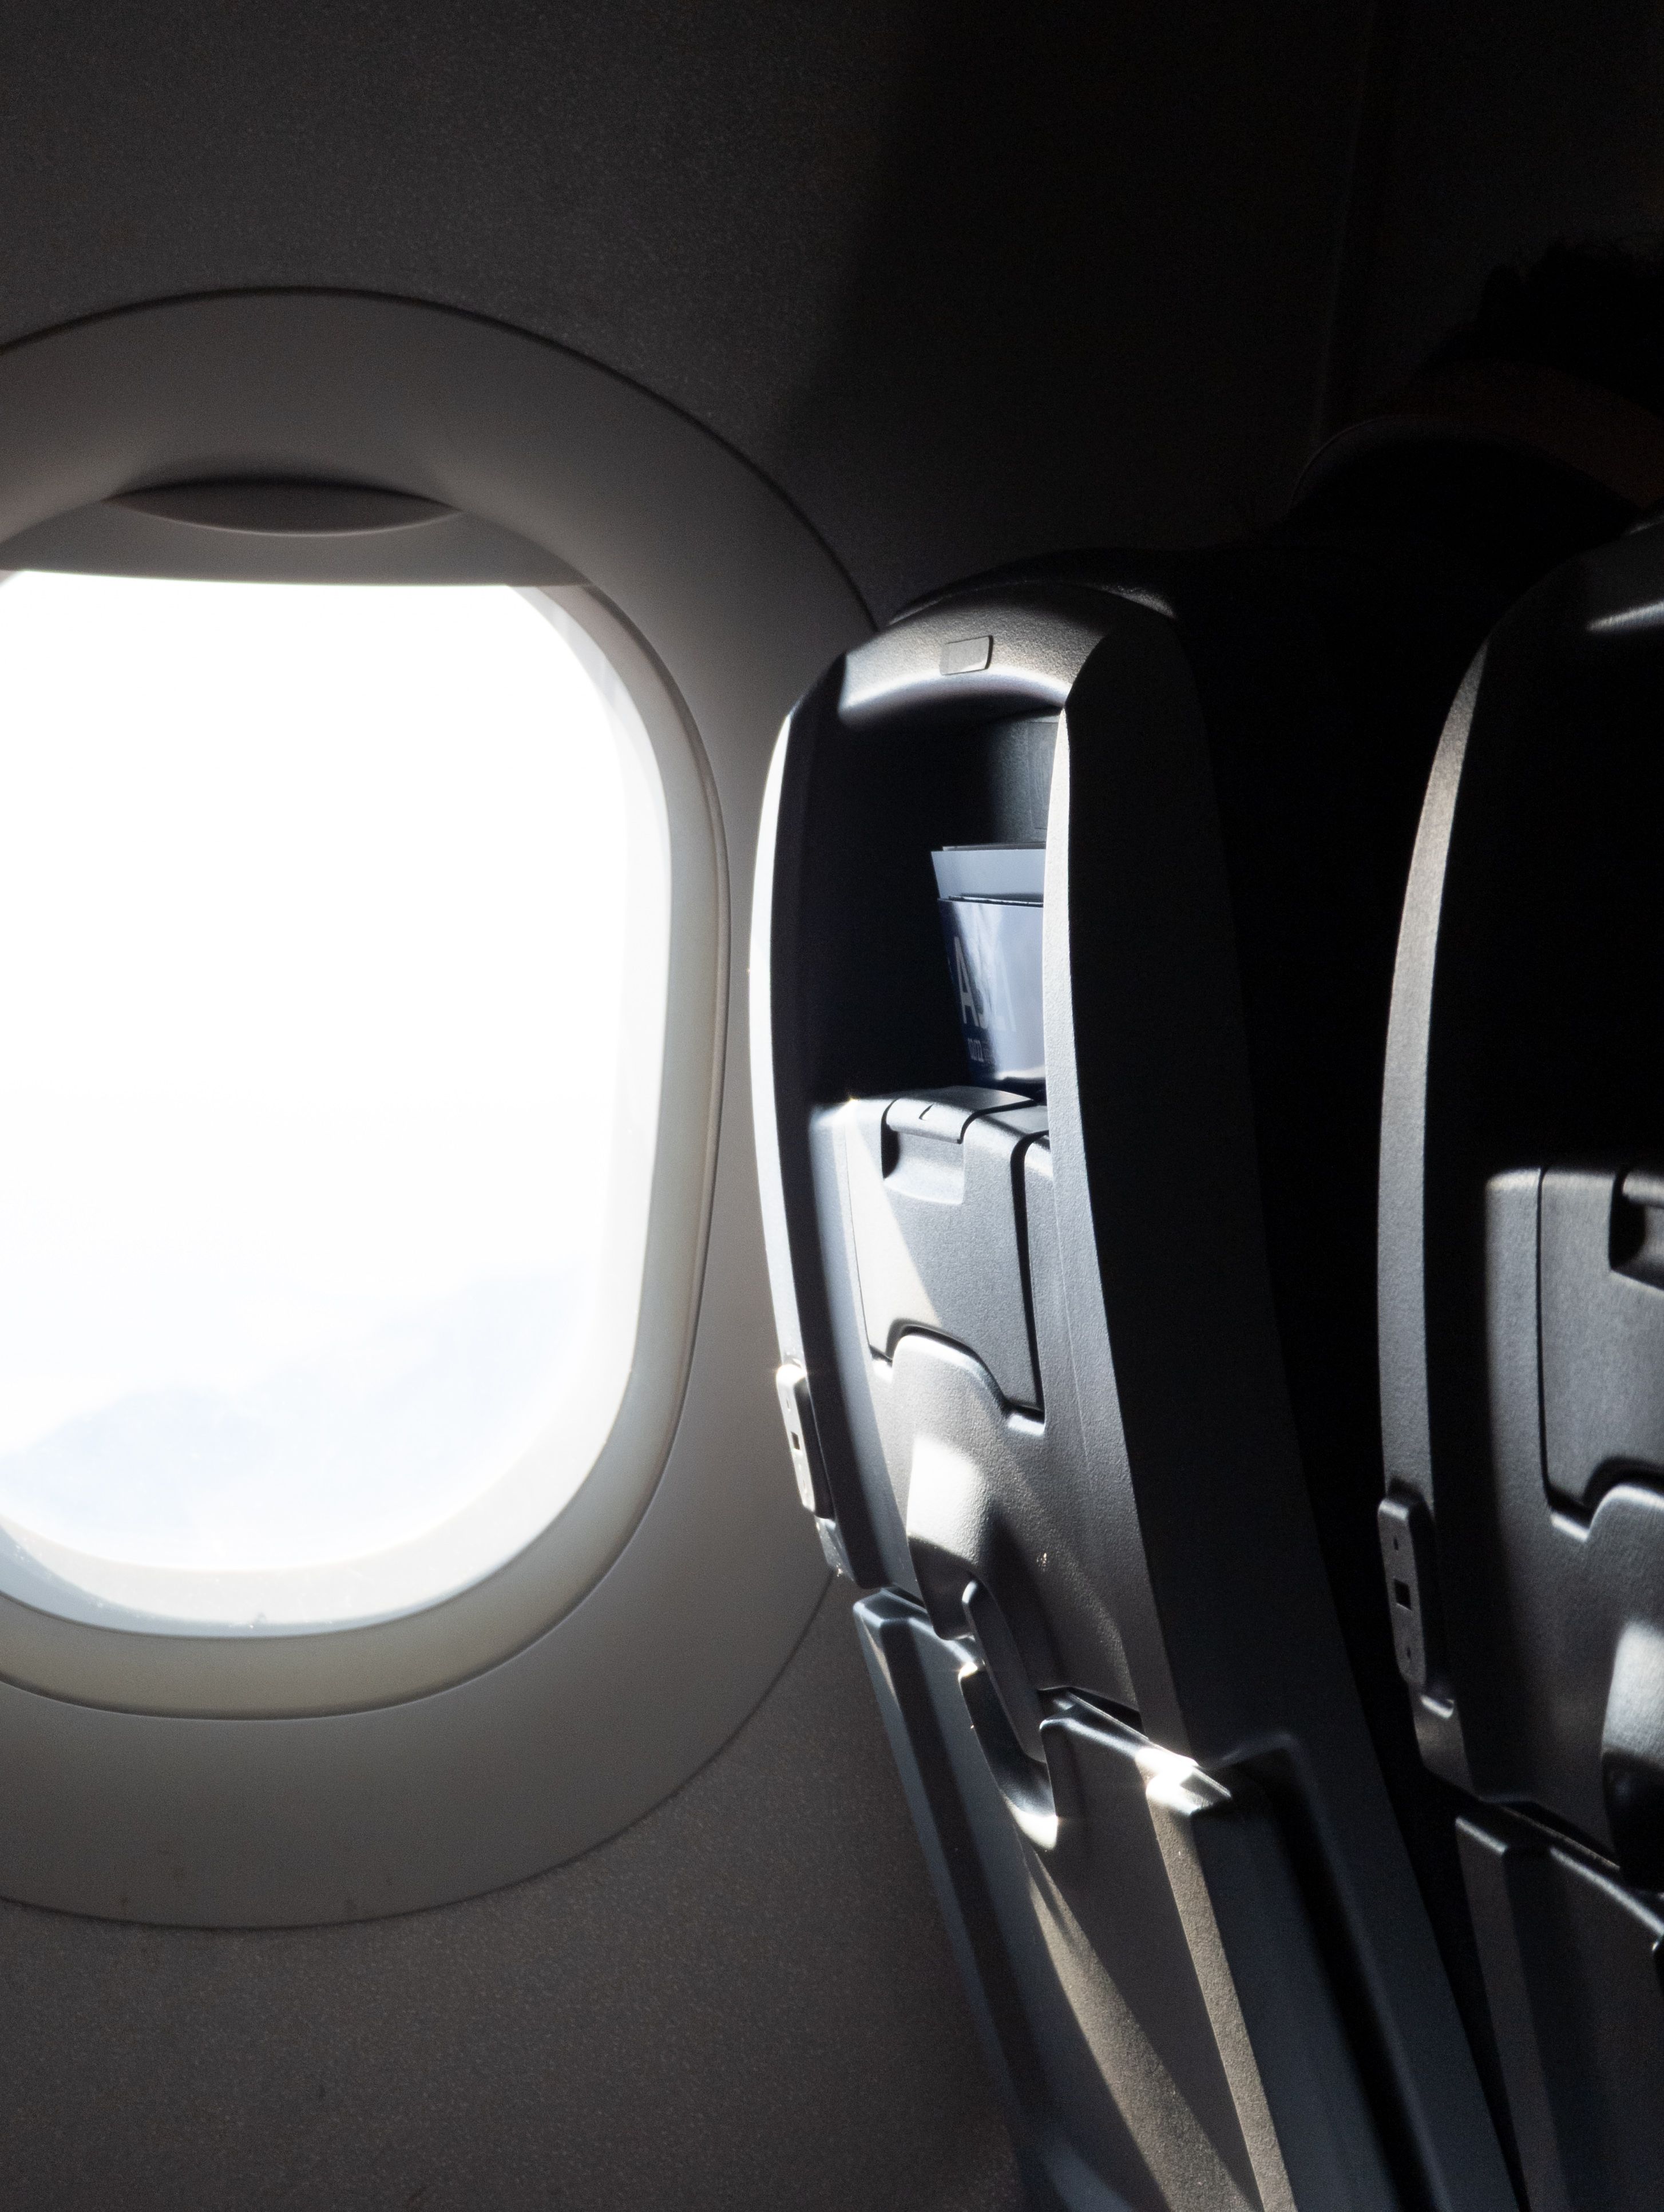 File foto RAW yang menunjukkan jendela dan kursi pesawat.